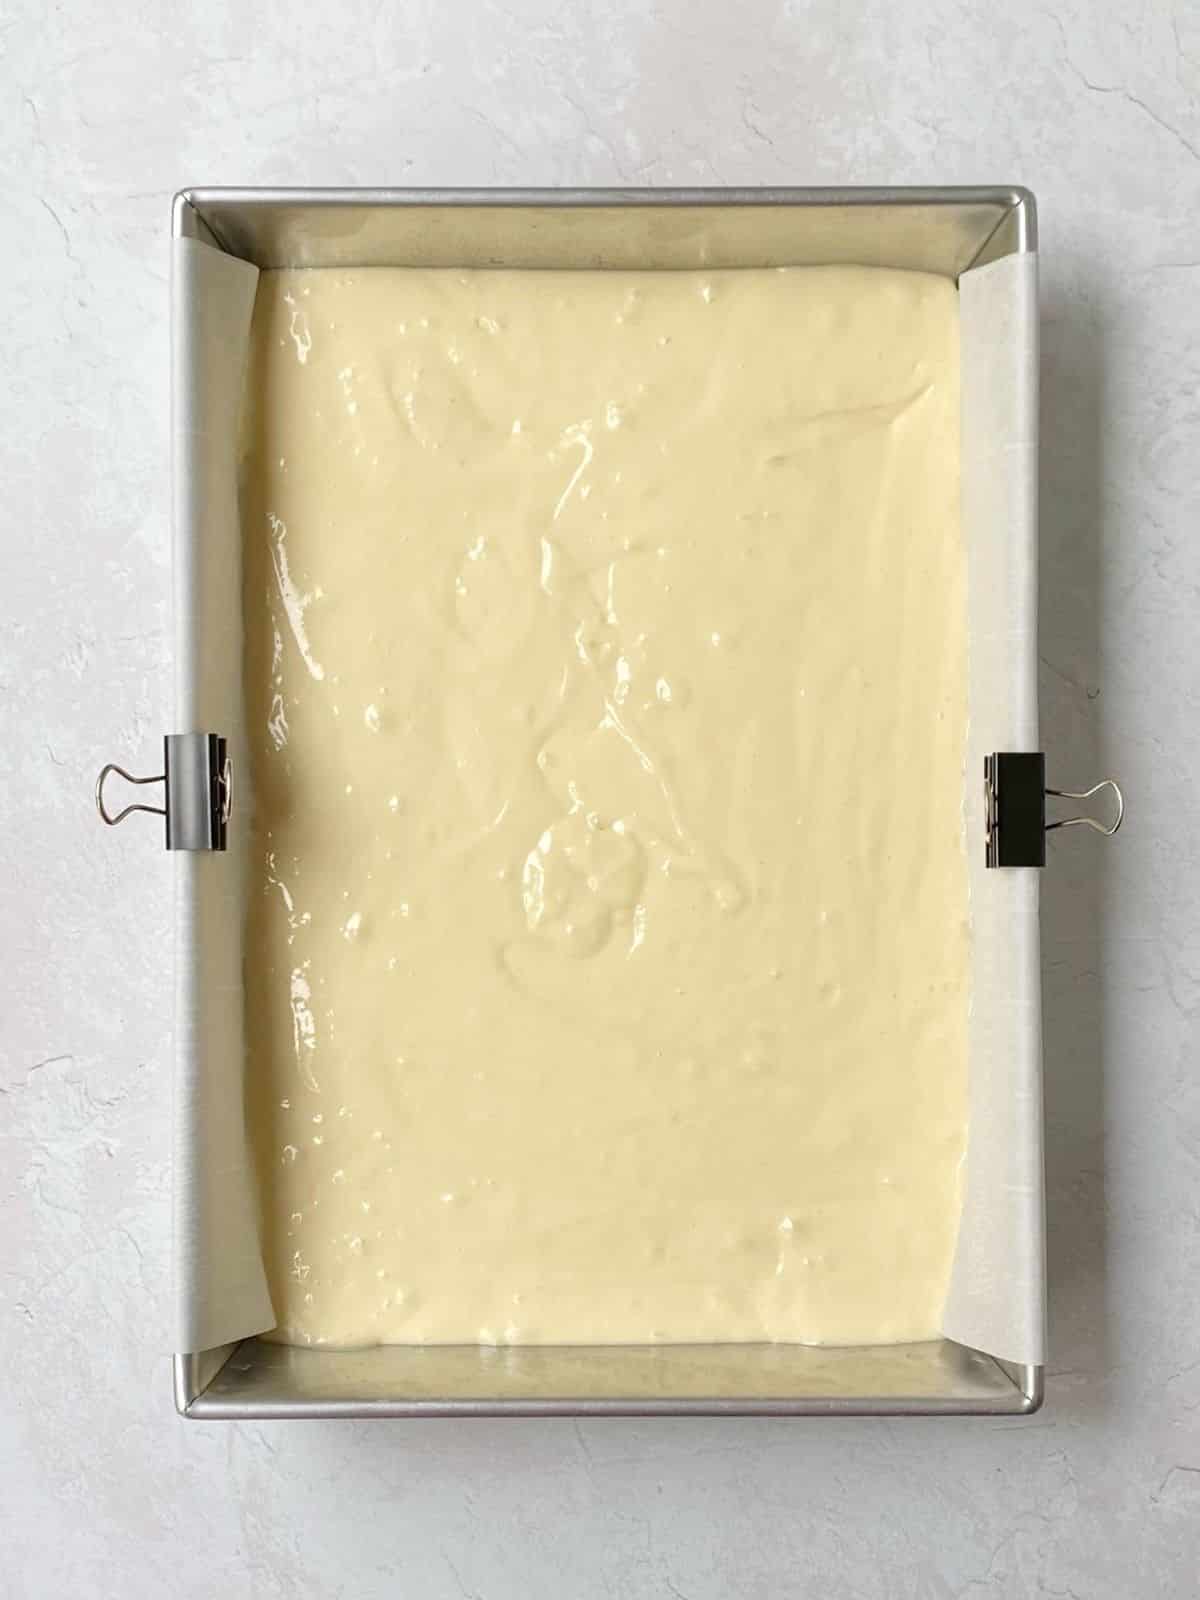 cake batter in prepared pan.